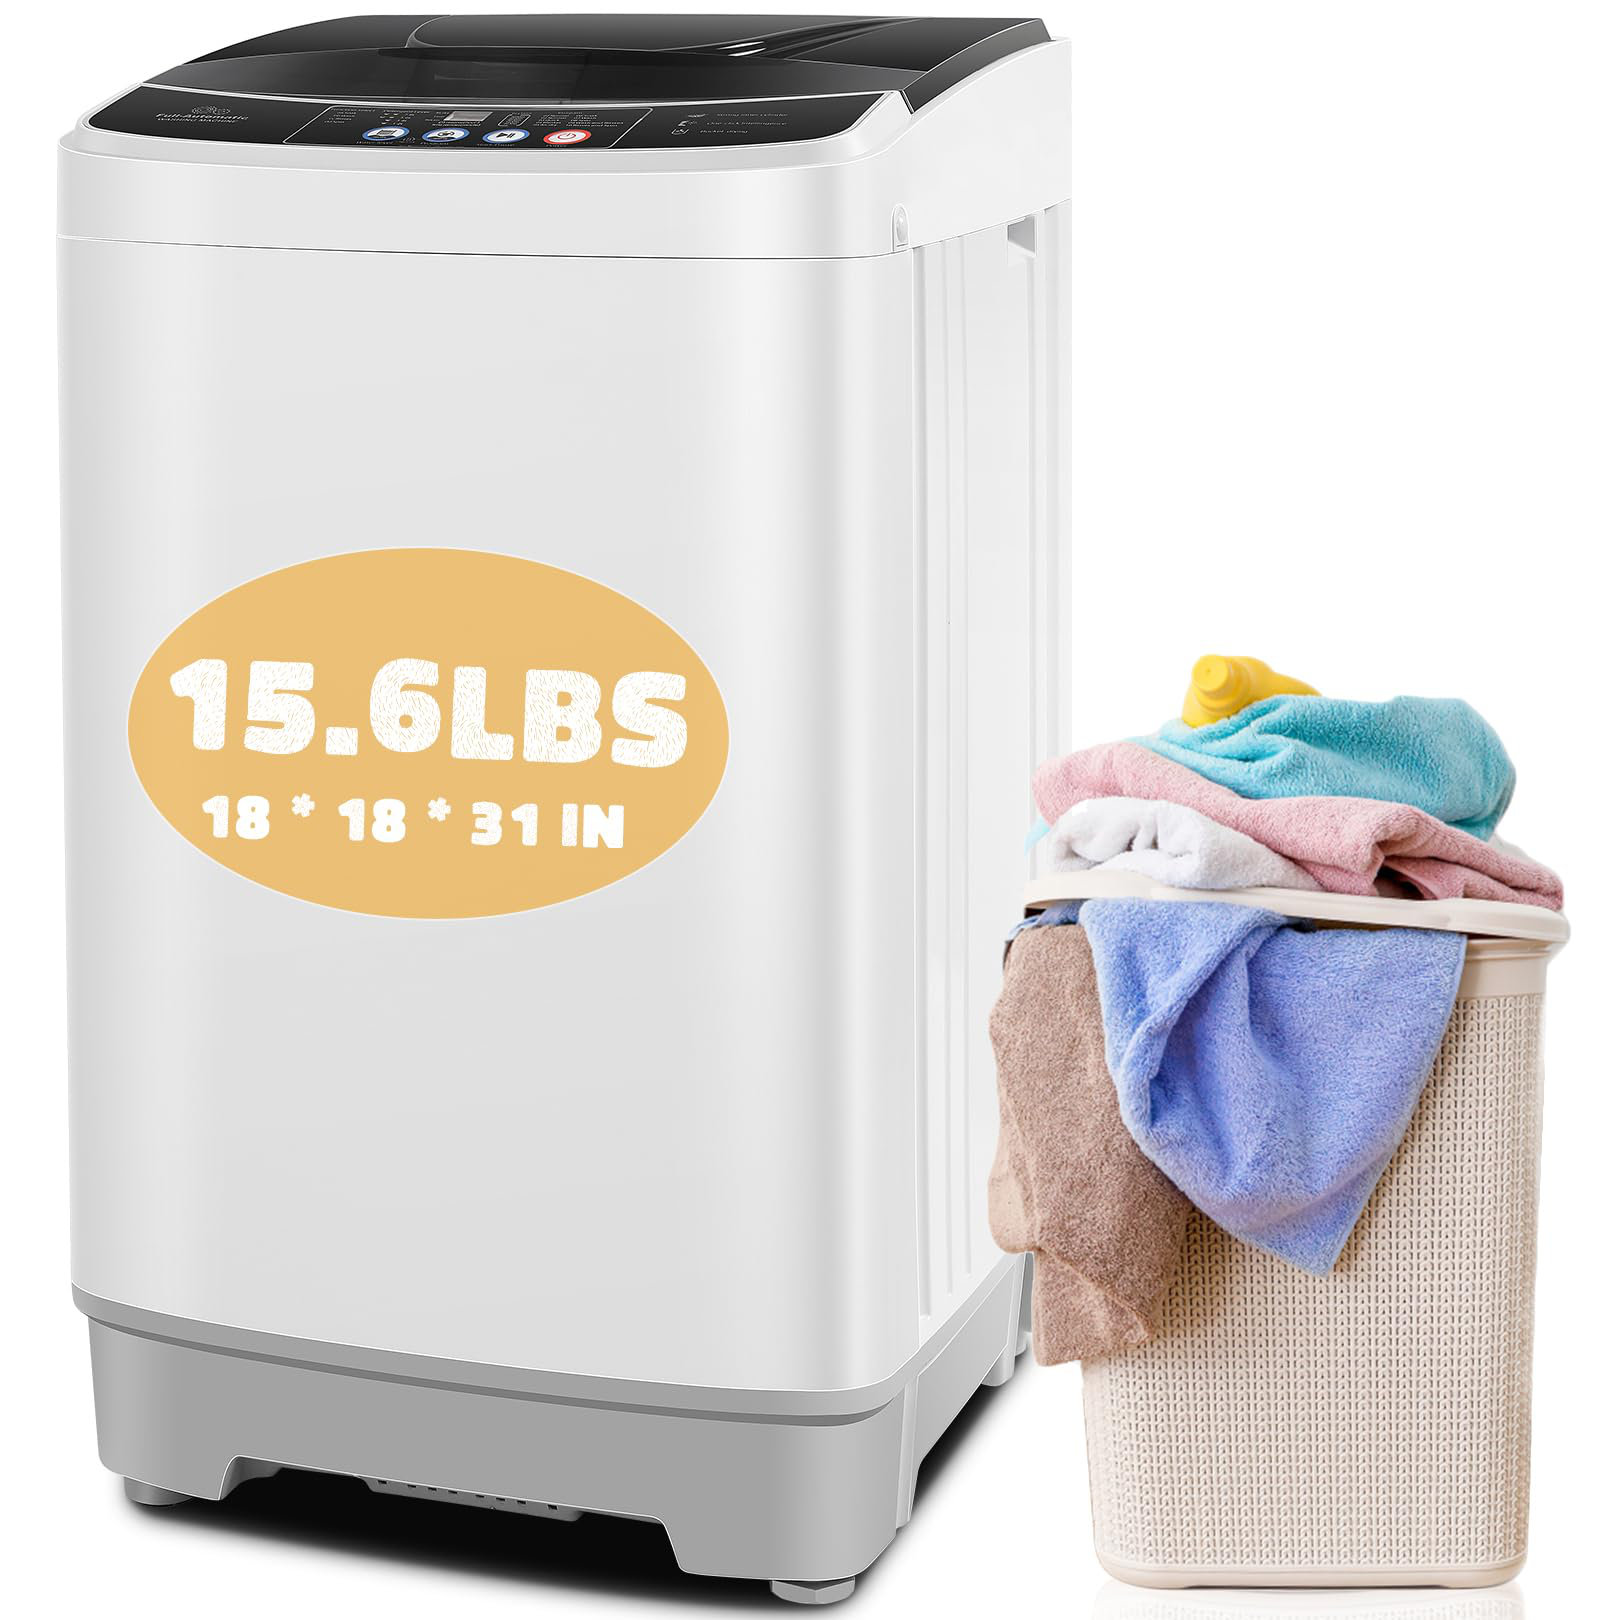 TABU 16.5 Cubic Feet cu. ft. High Efficiency Portable Washer